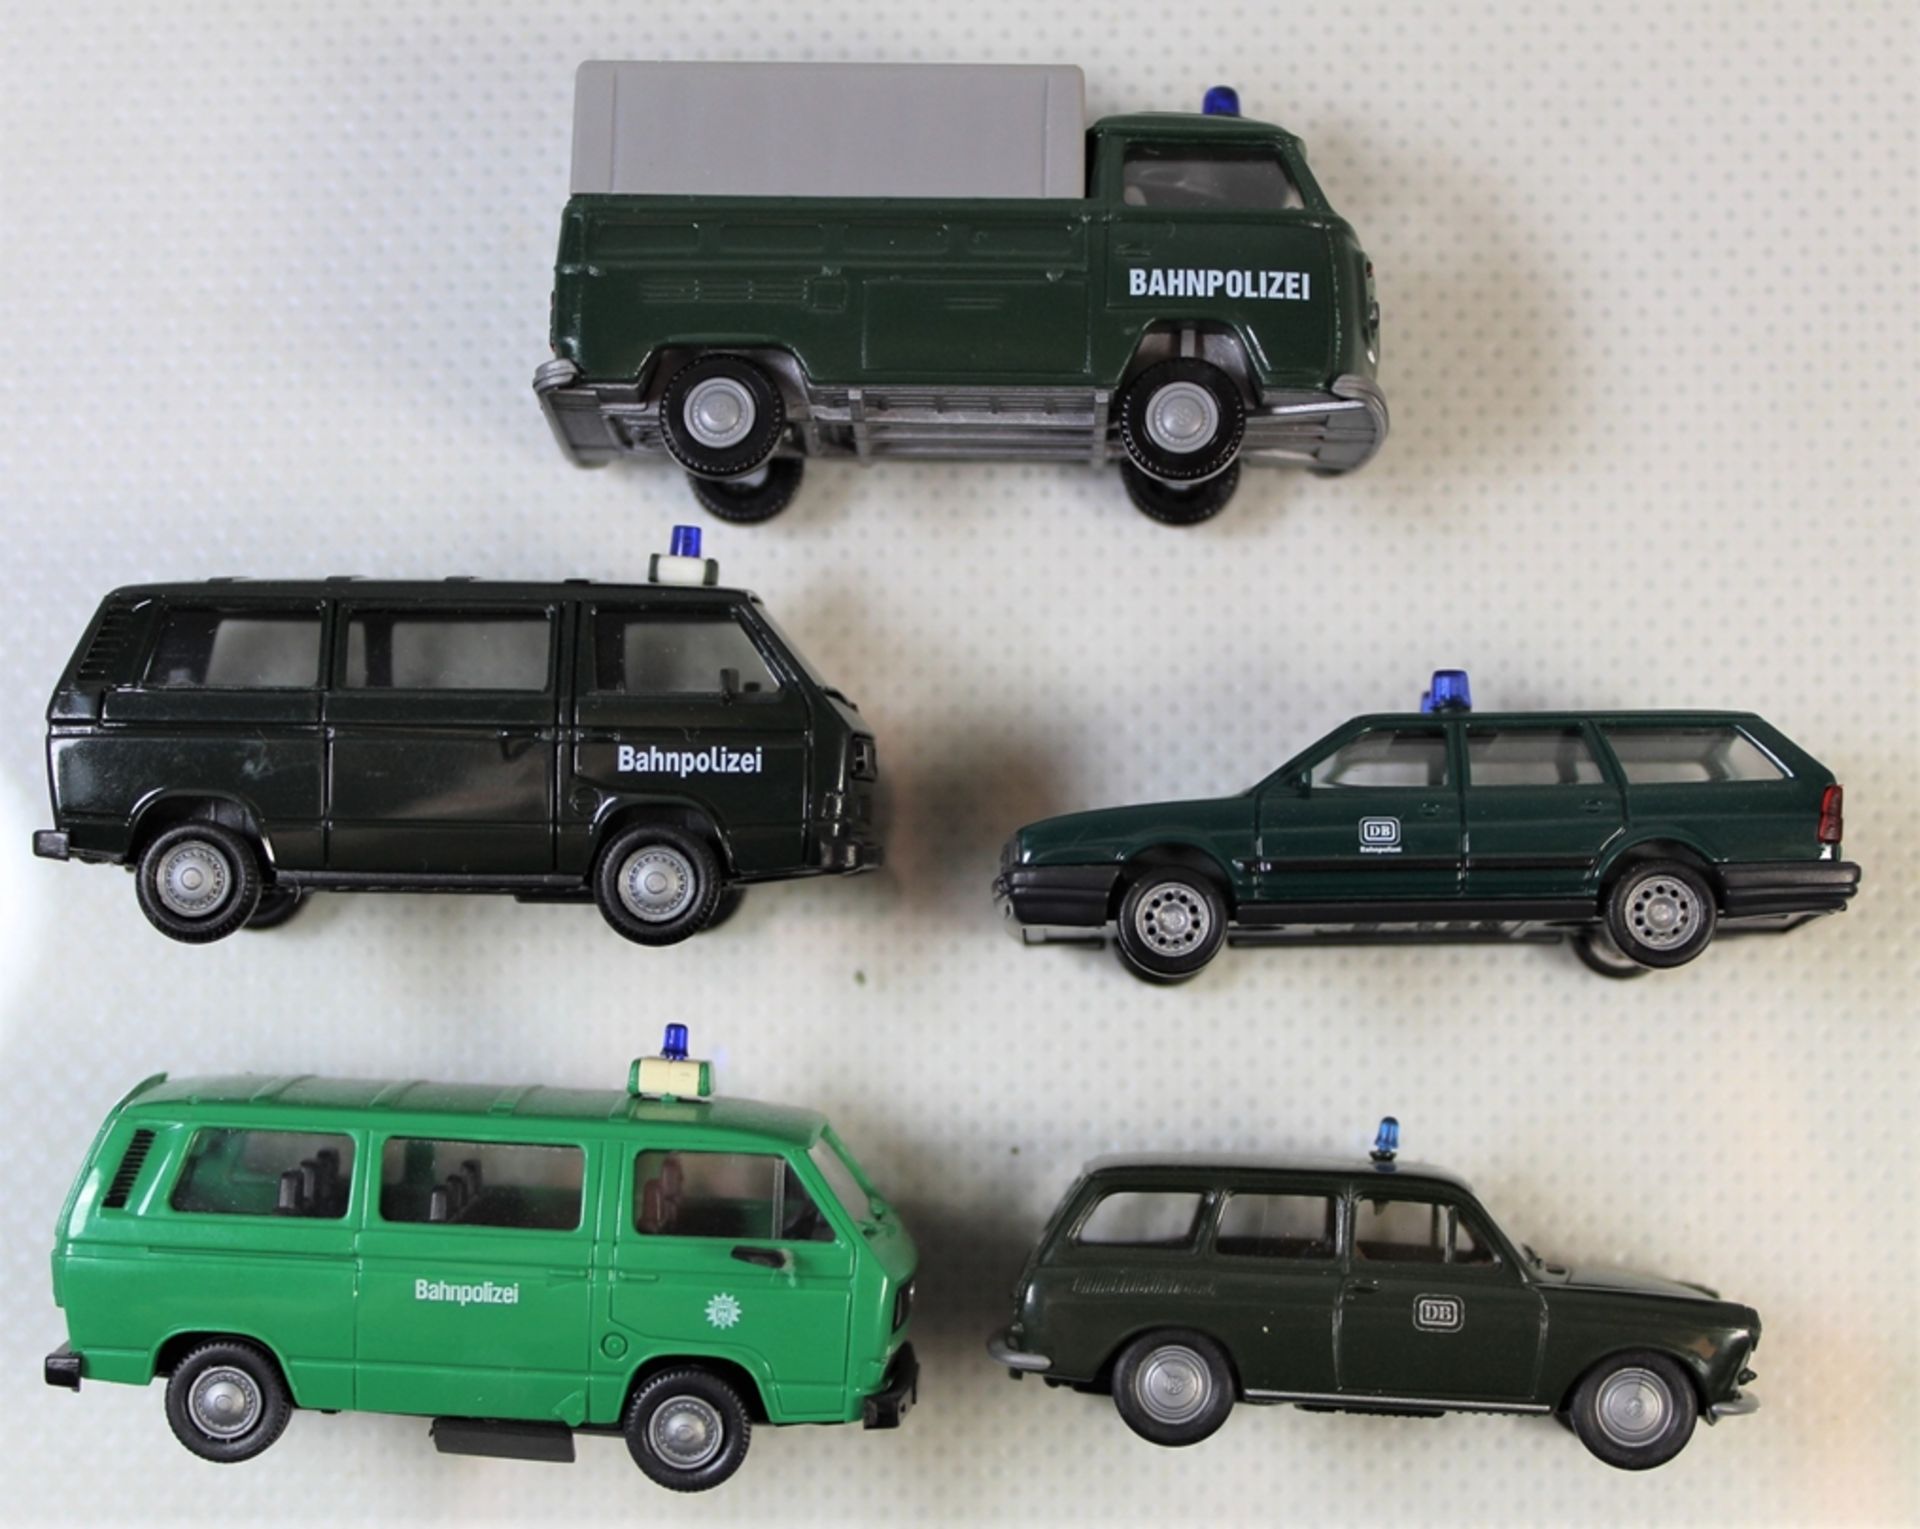 1x Busch, 1x Herpa, 1 x Brekina, 1 x APS und 1 x Roco, 5 Deutsche Bahnpolizei Fahrzeuge, Modellbauf - Bild 3 aus 4